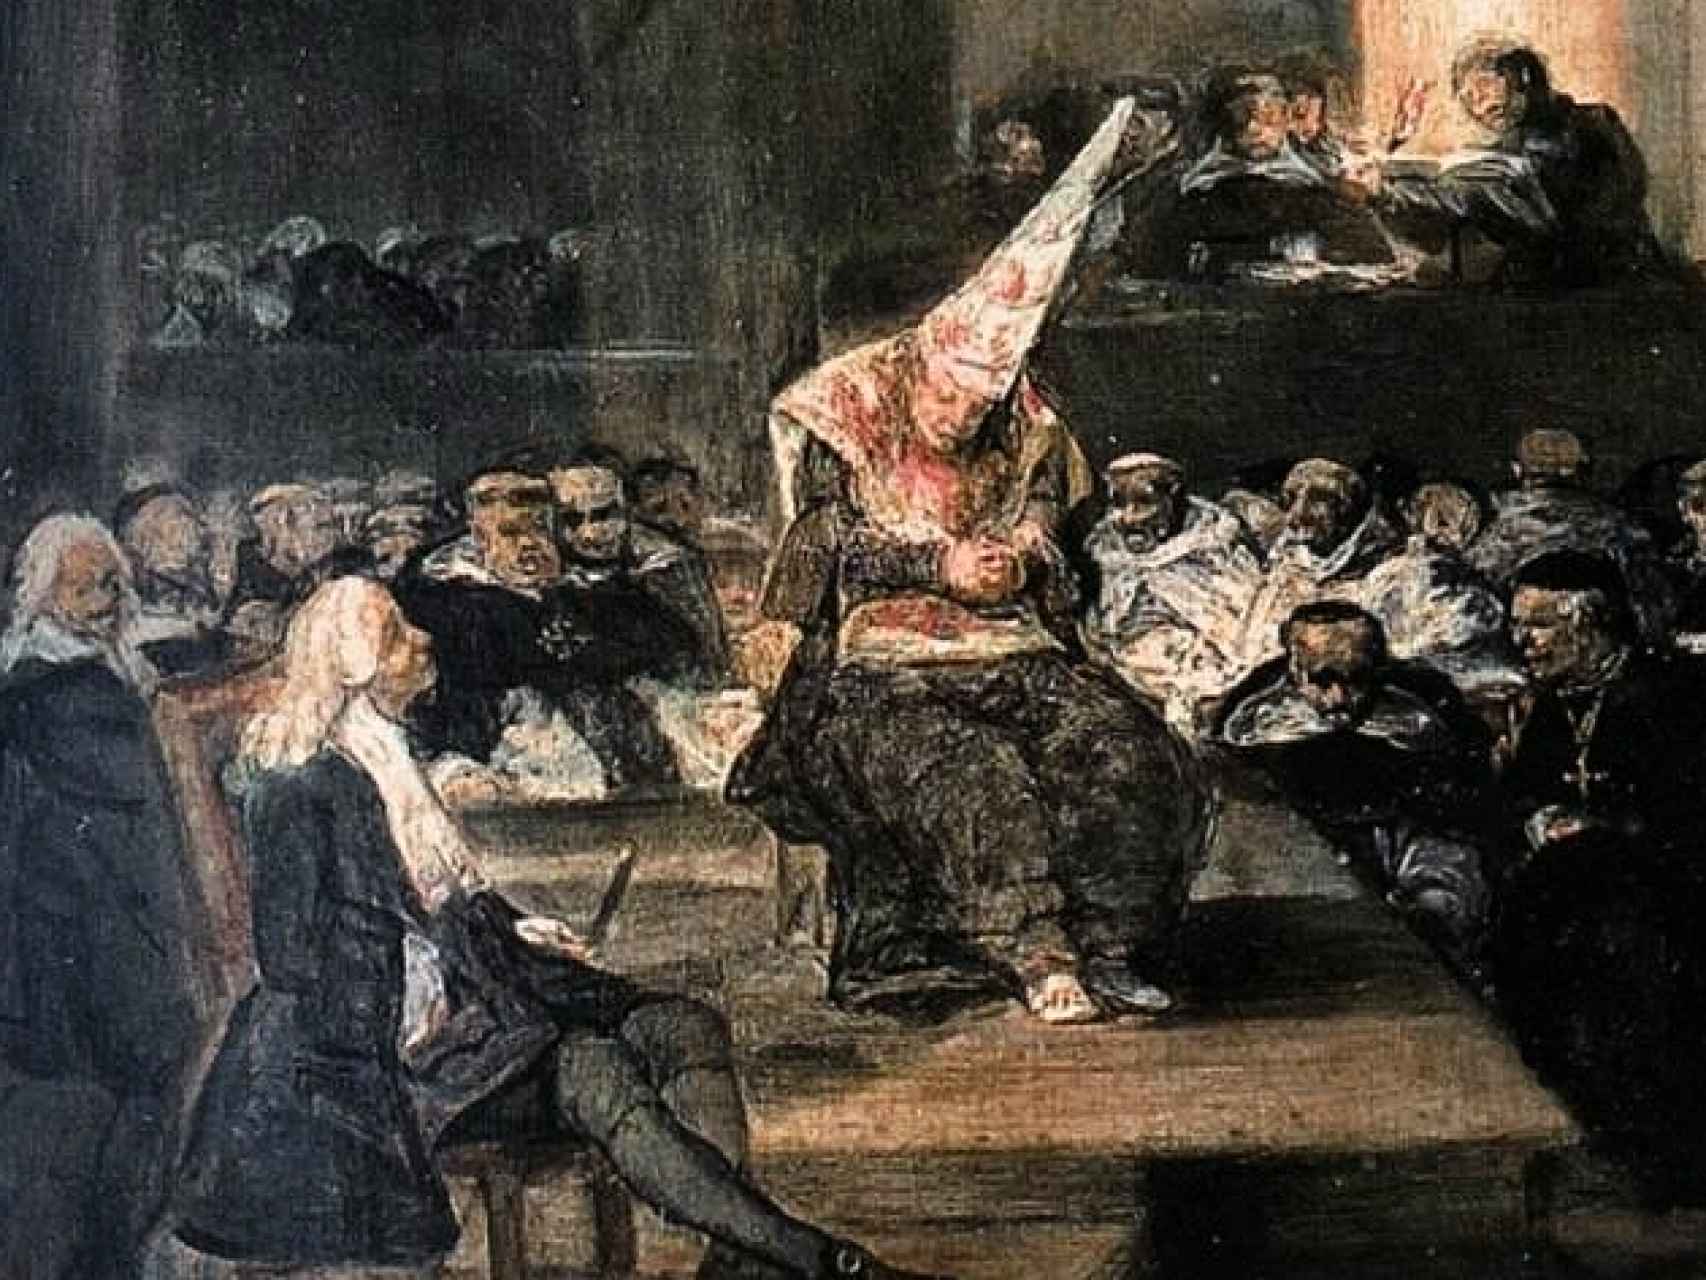 Auto de fe de la Inquisición, Francisco de Goya (1812-1819).